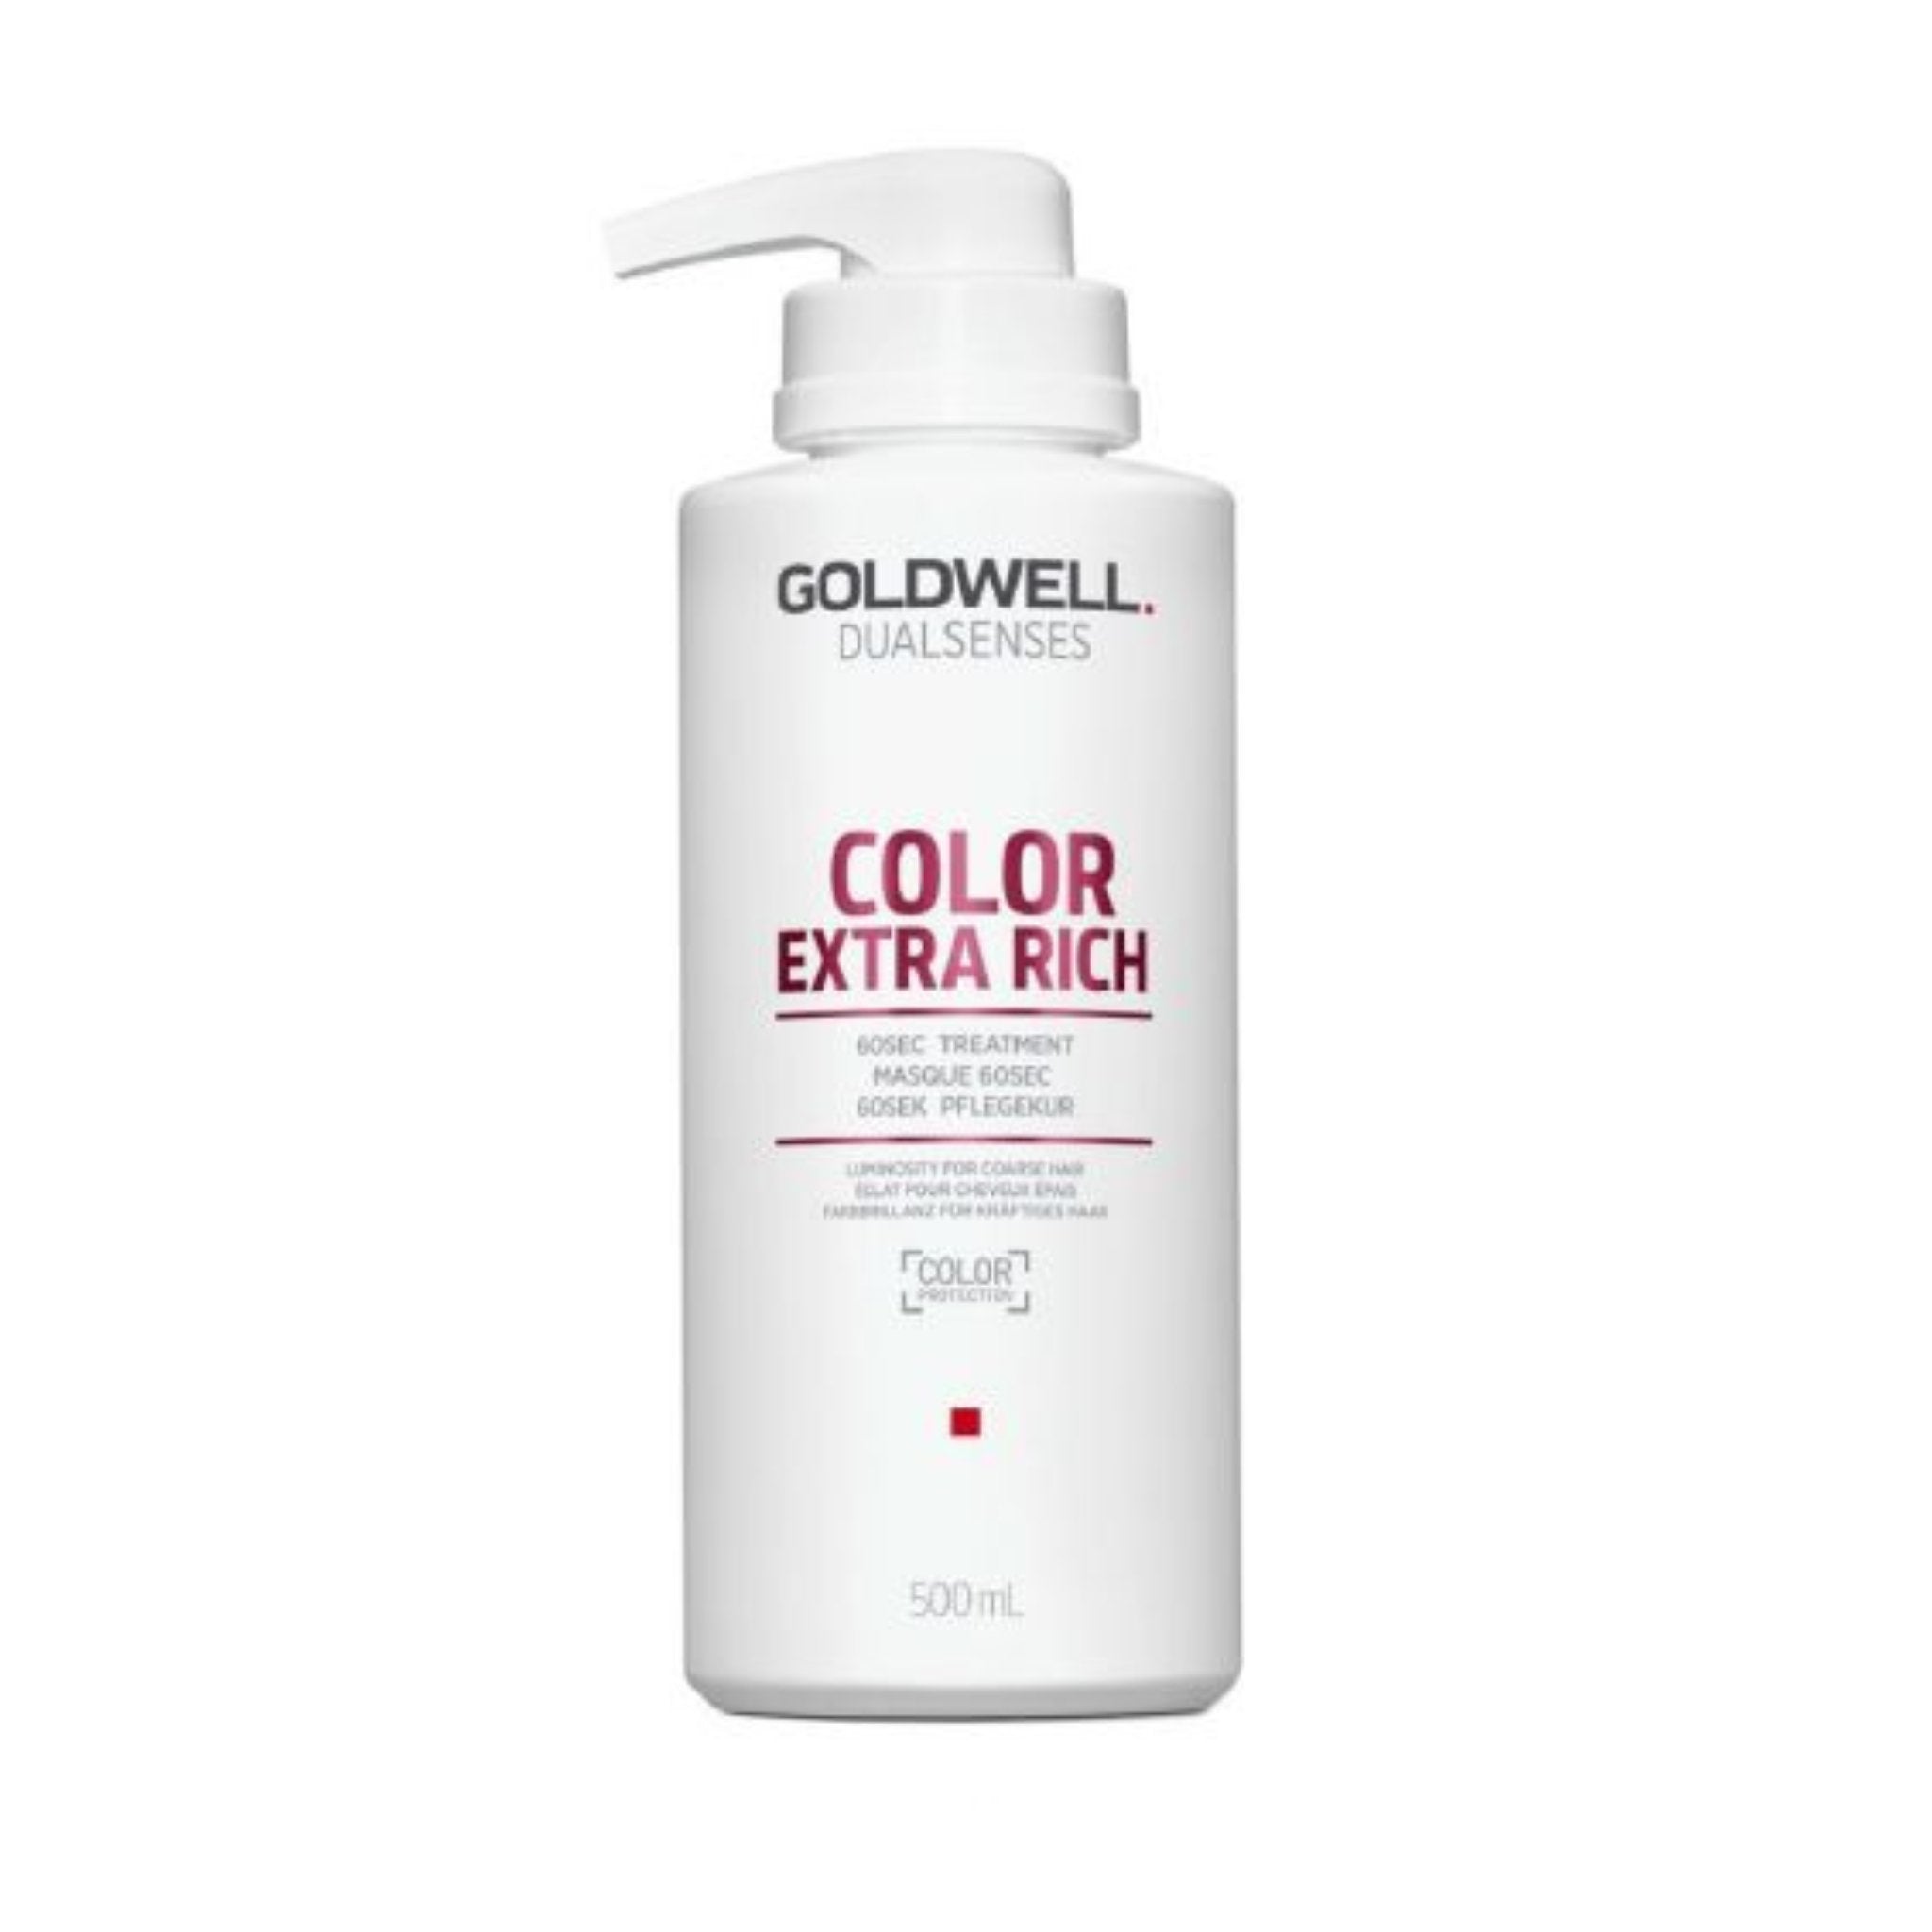 Goldwell. Dual Senses Traitement 60 secondes Color Extra Rich - 500 ml - Concept C. Shop